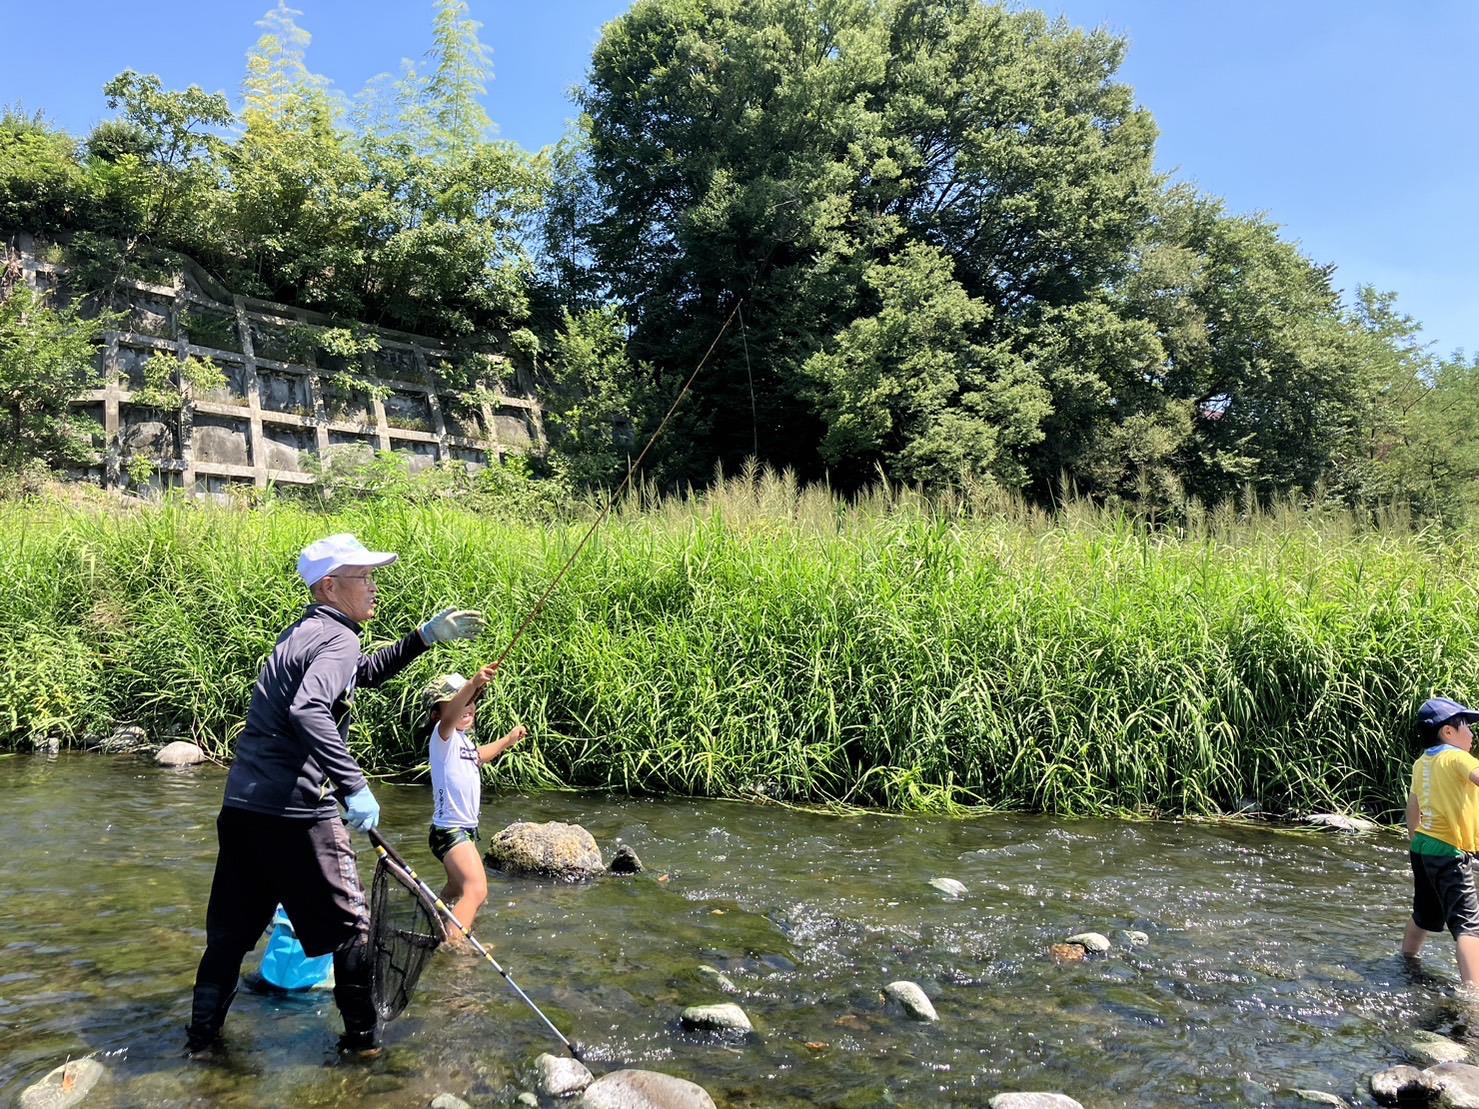 講師の近藤氏と参加者の小学生が川に入り釣りをしている様子